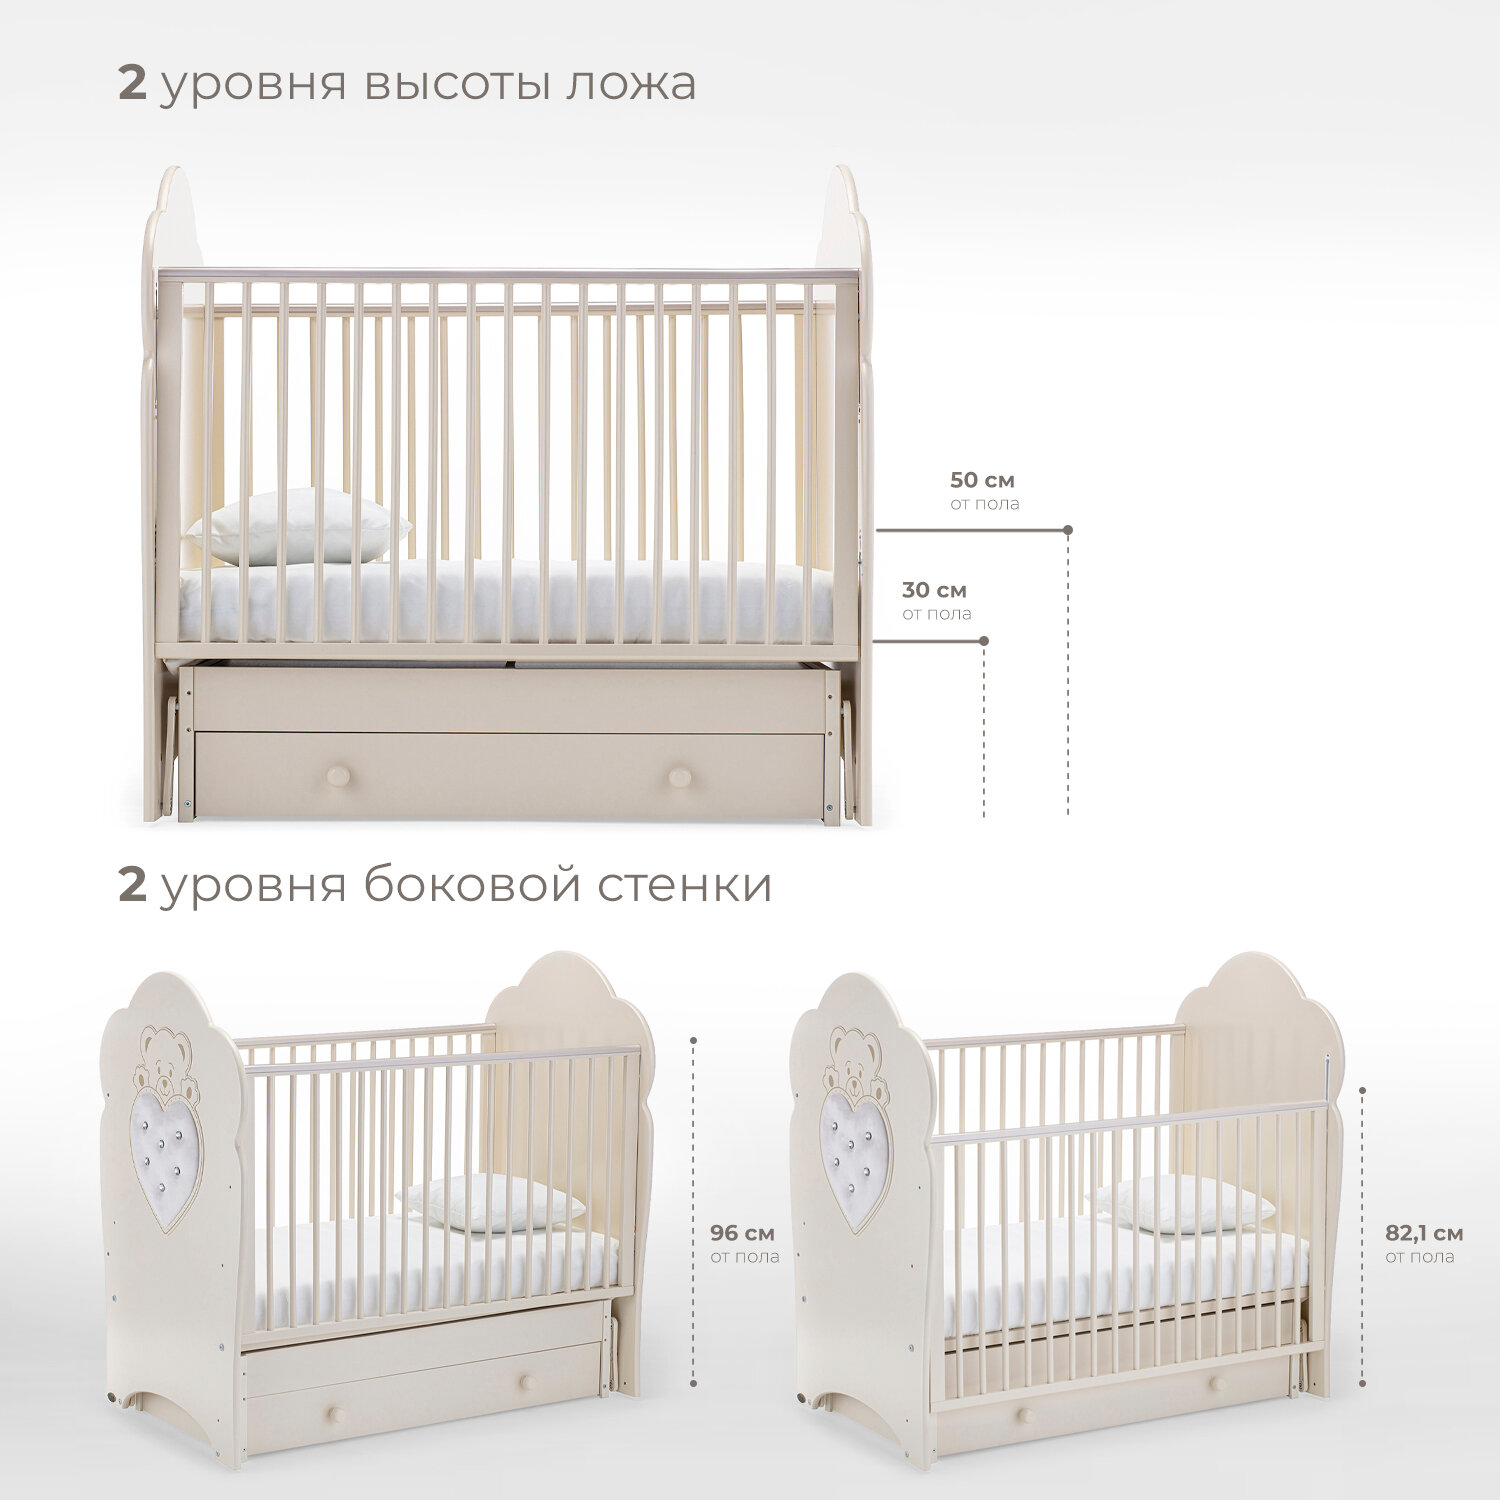 Детская кровать Nuovita Fortuna Swing, белая - фото №3